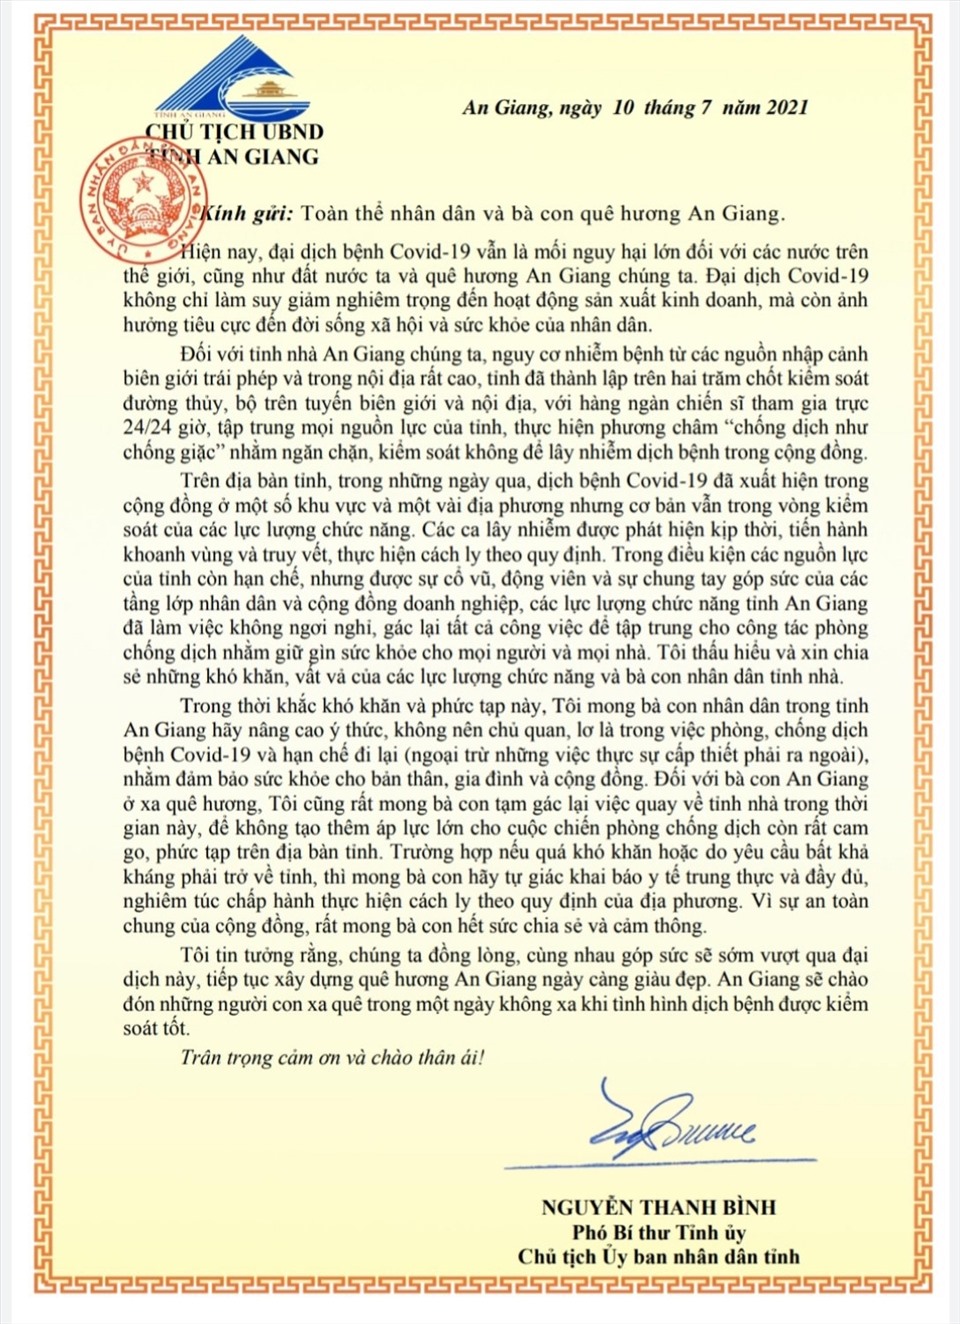 Tâm thư của Chủ tịch UBND tỉnh An Giang gởi người dân An Giang sau khi ban hàng lệnh thực hiện giãn cách xã hội. Ảnh: LT